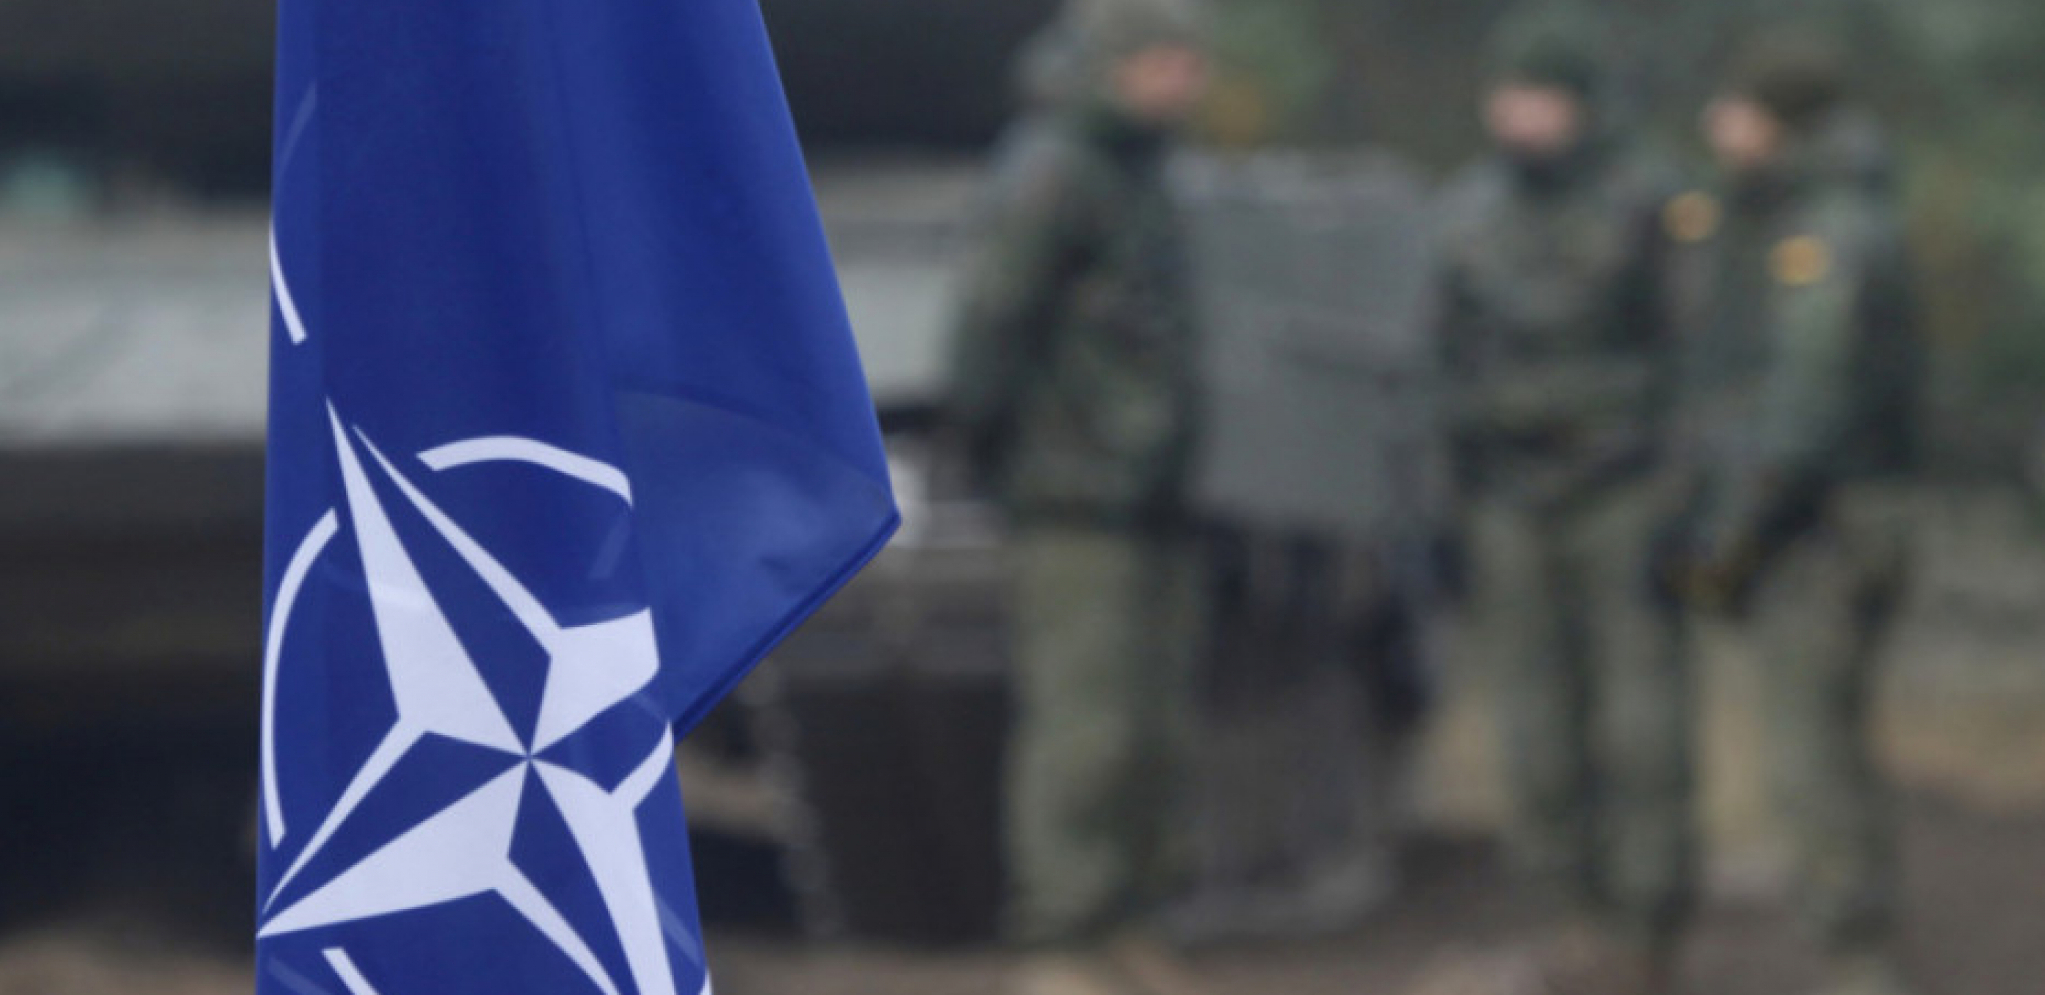 KORAK BLIŽE NATO Ukrajina pozvana na sednicu koja je isključivo za članice Alijanse